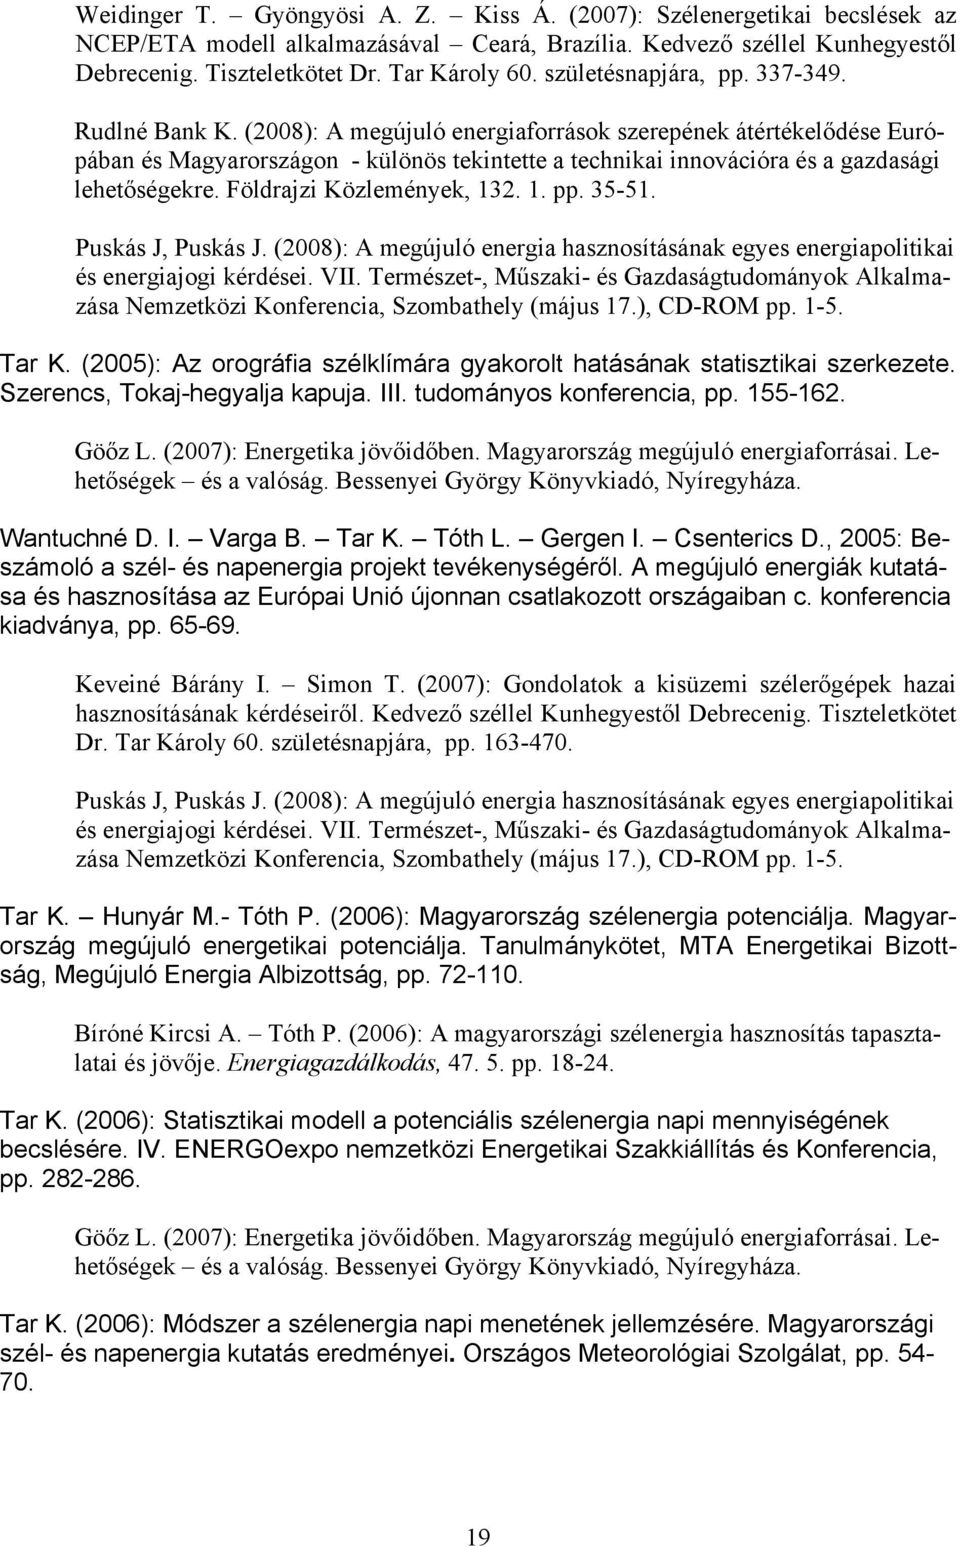 (2008): A megújuló energiaforrások szerepének átértékelődése Európában és Magyarországon - különös tekintette a technikai innovációra és a gazdasági lehetőségekre. Földrajzi Közlemények, 132. 1. pp.